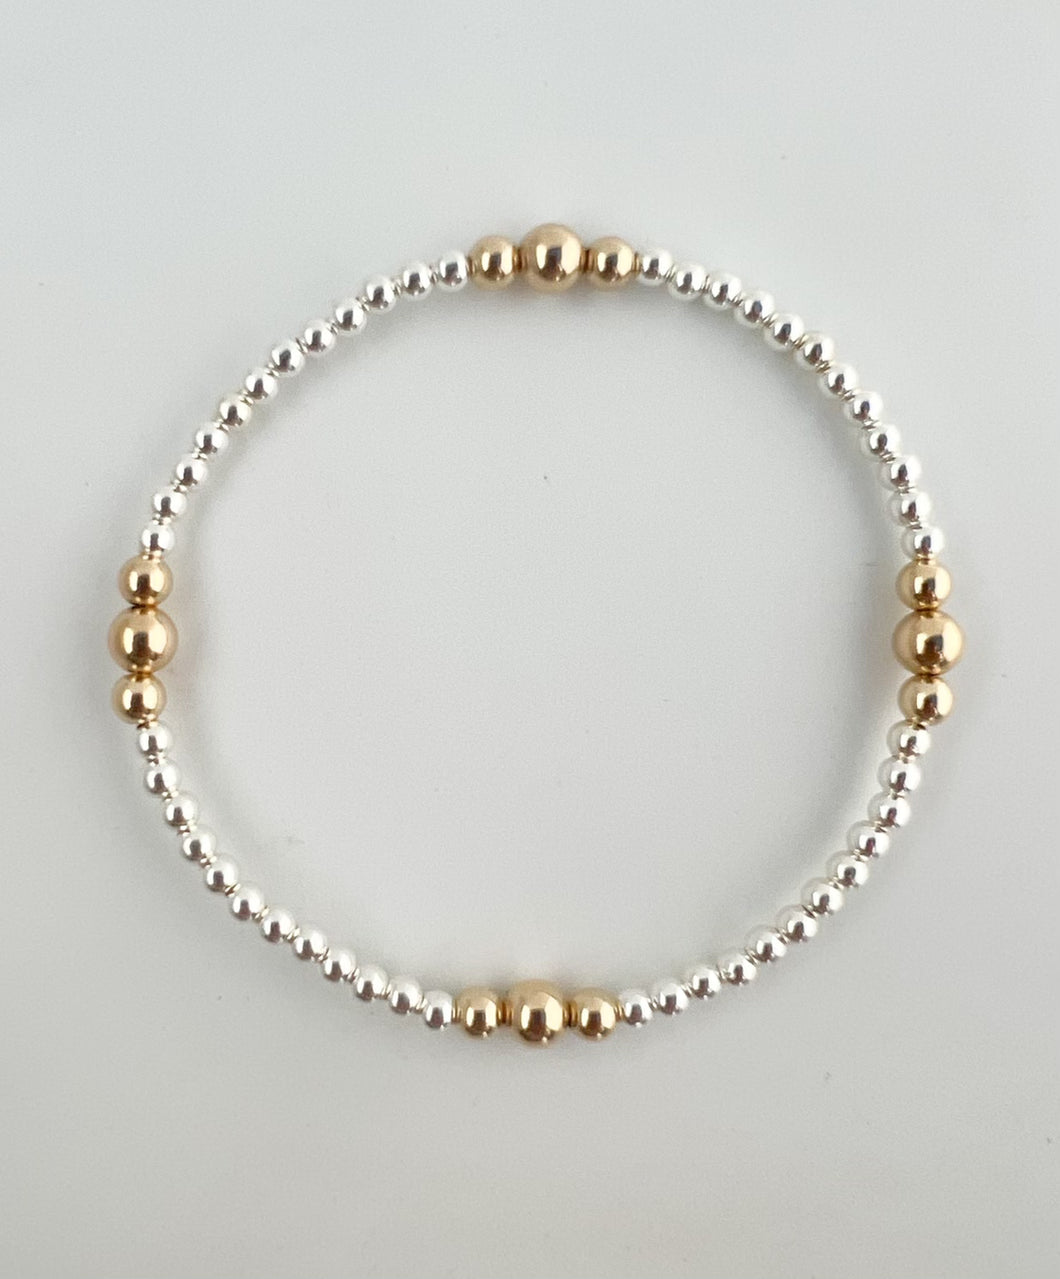 3mm silver with 14k gold pattern bracelet